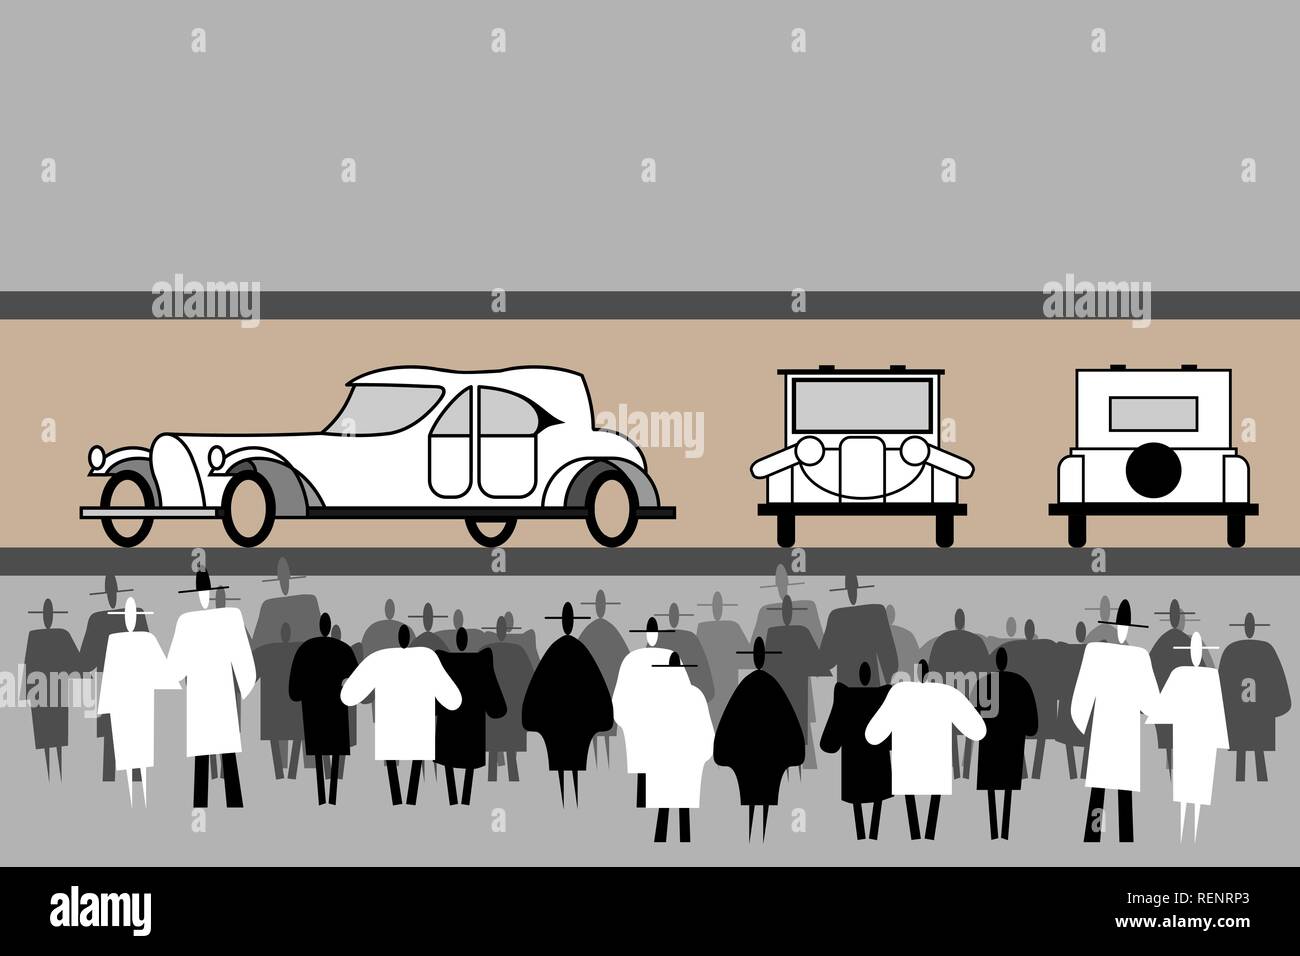 Leute stehen an einem aristokratischen retro Autos Ausstellung. Vintage elegante Auto. Vorn, hinten, von der Seite. Schwarze und weiße menschliche Silhouetten. Die Masse Stock Vektor